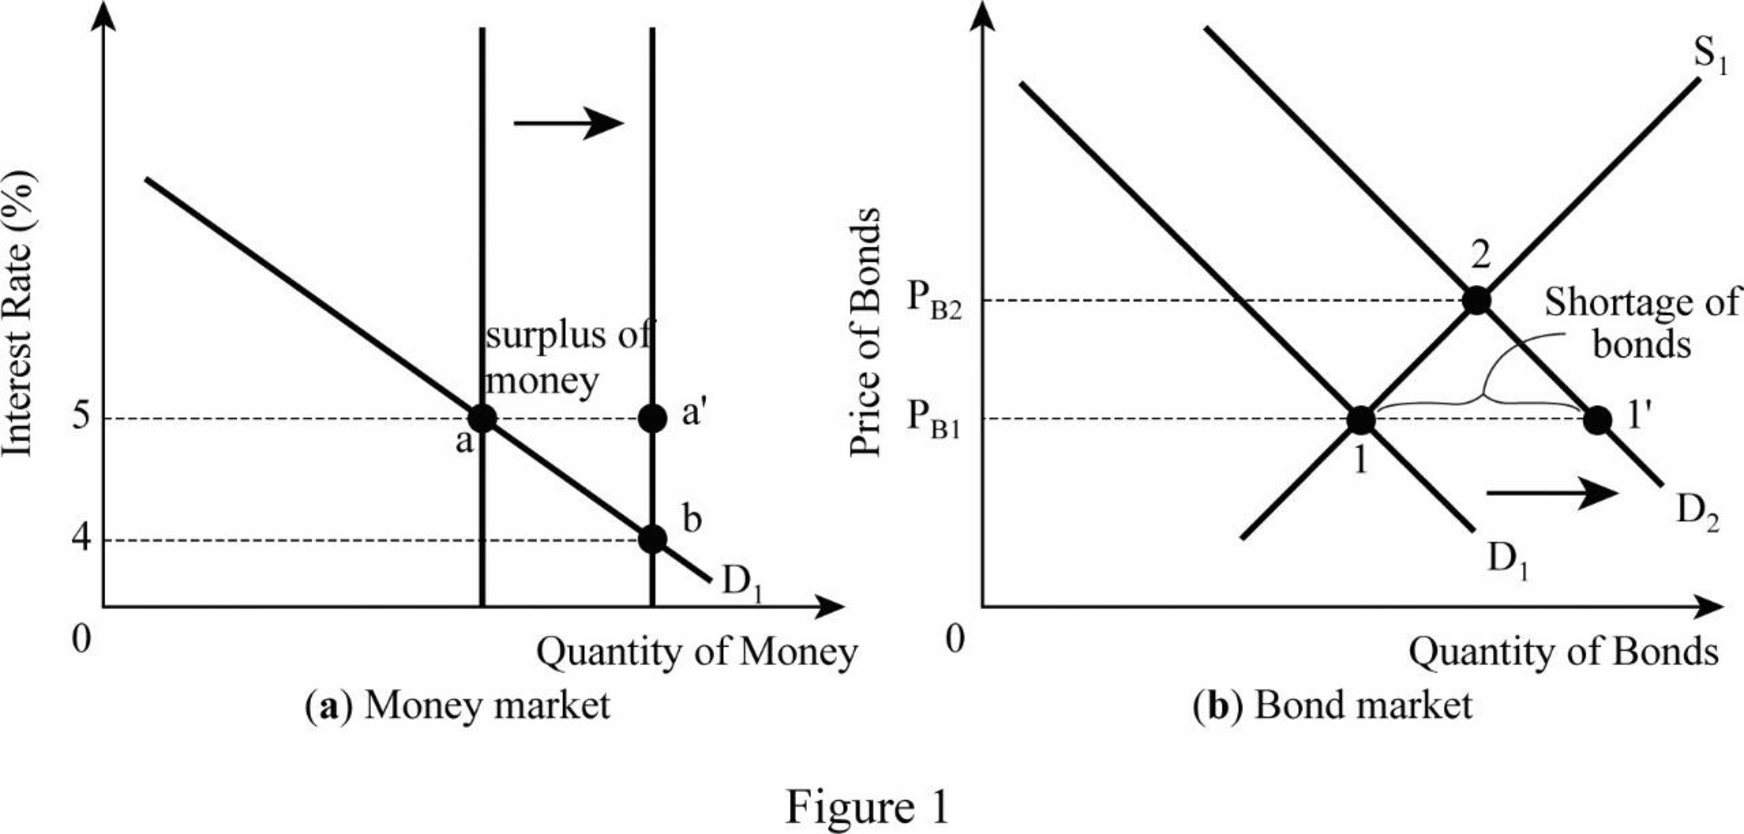 Macroeconomics - With LMS MindTap (1 Term), Chapter D, Problem 1QP 